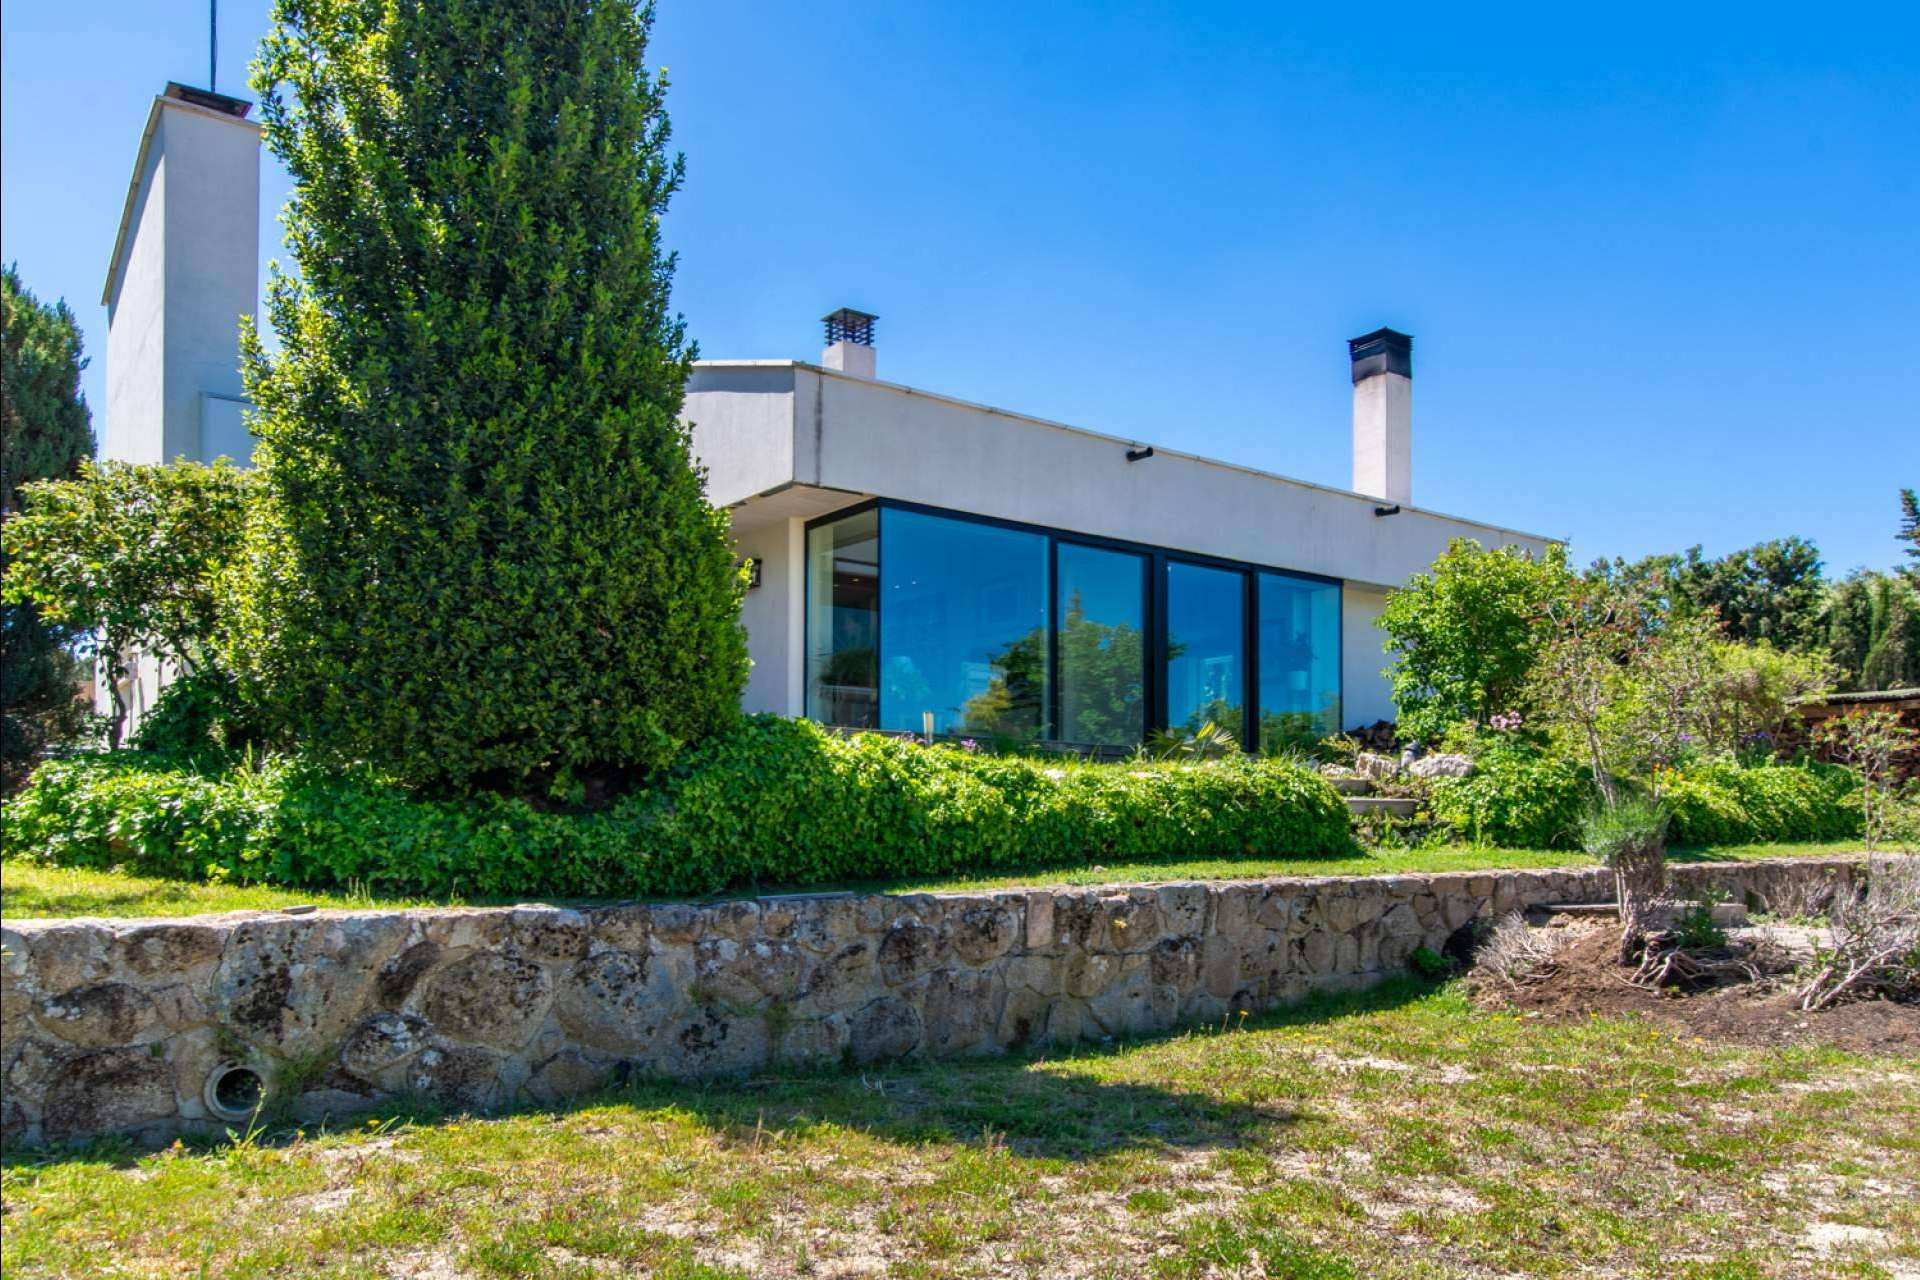  Saguar Real Estate pone en venta una villa de lujo en la prestigiosa urbanización Club de Golf, en Las Rozas (Madrid) 